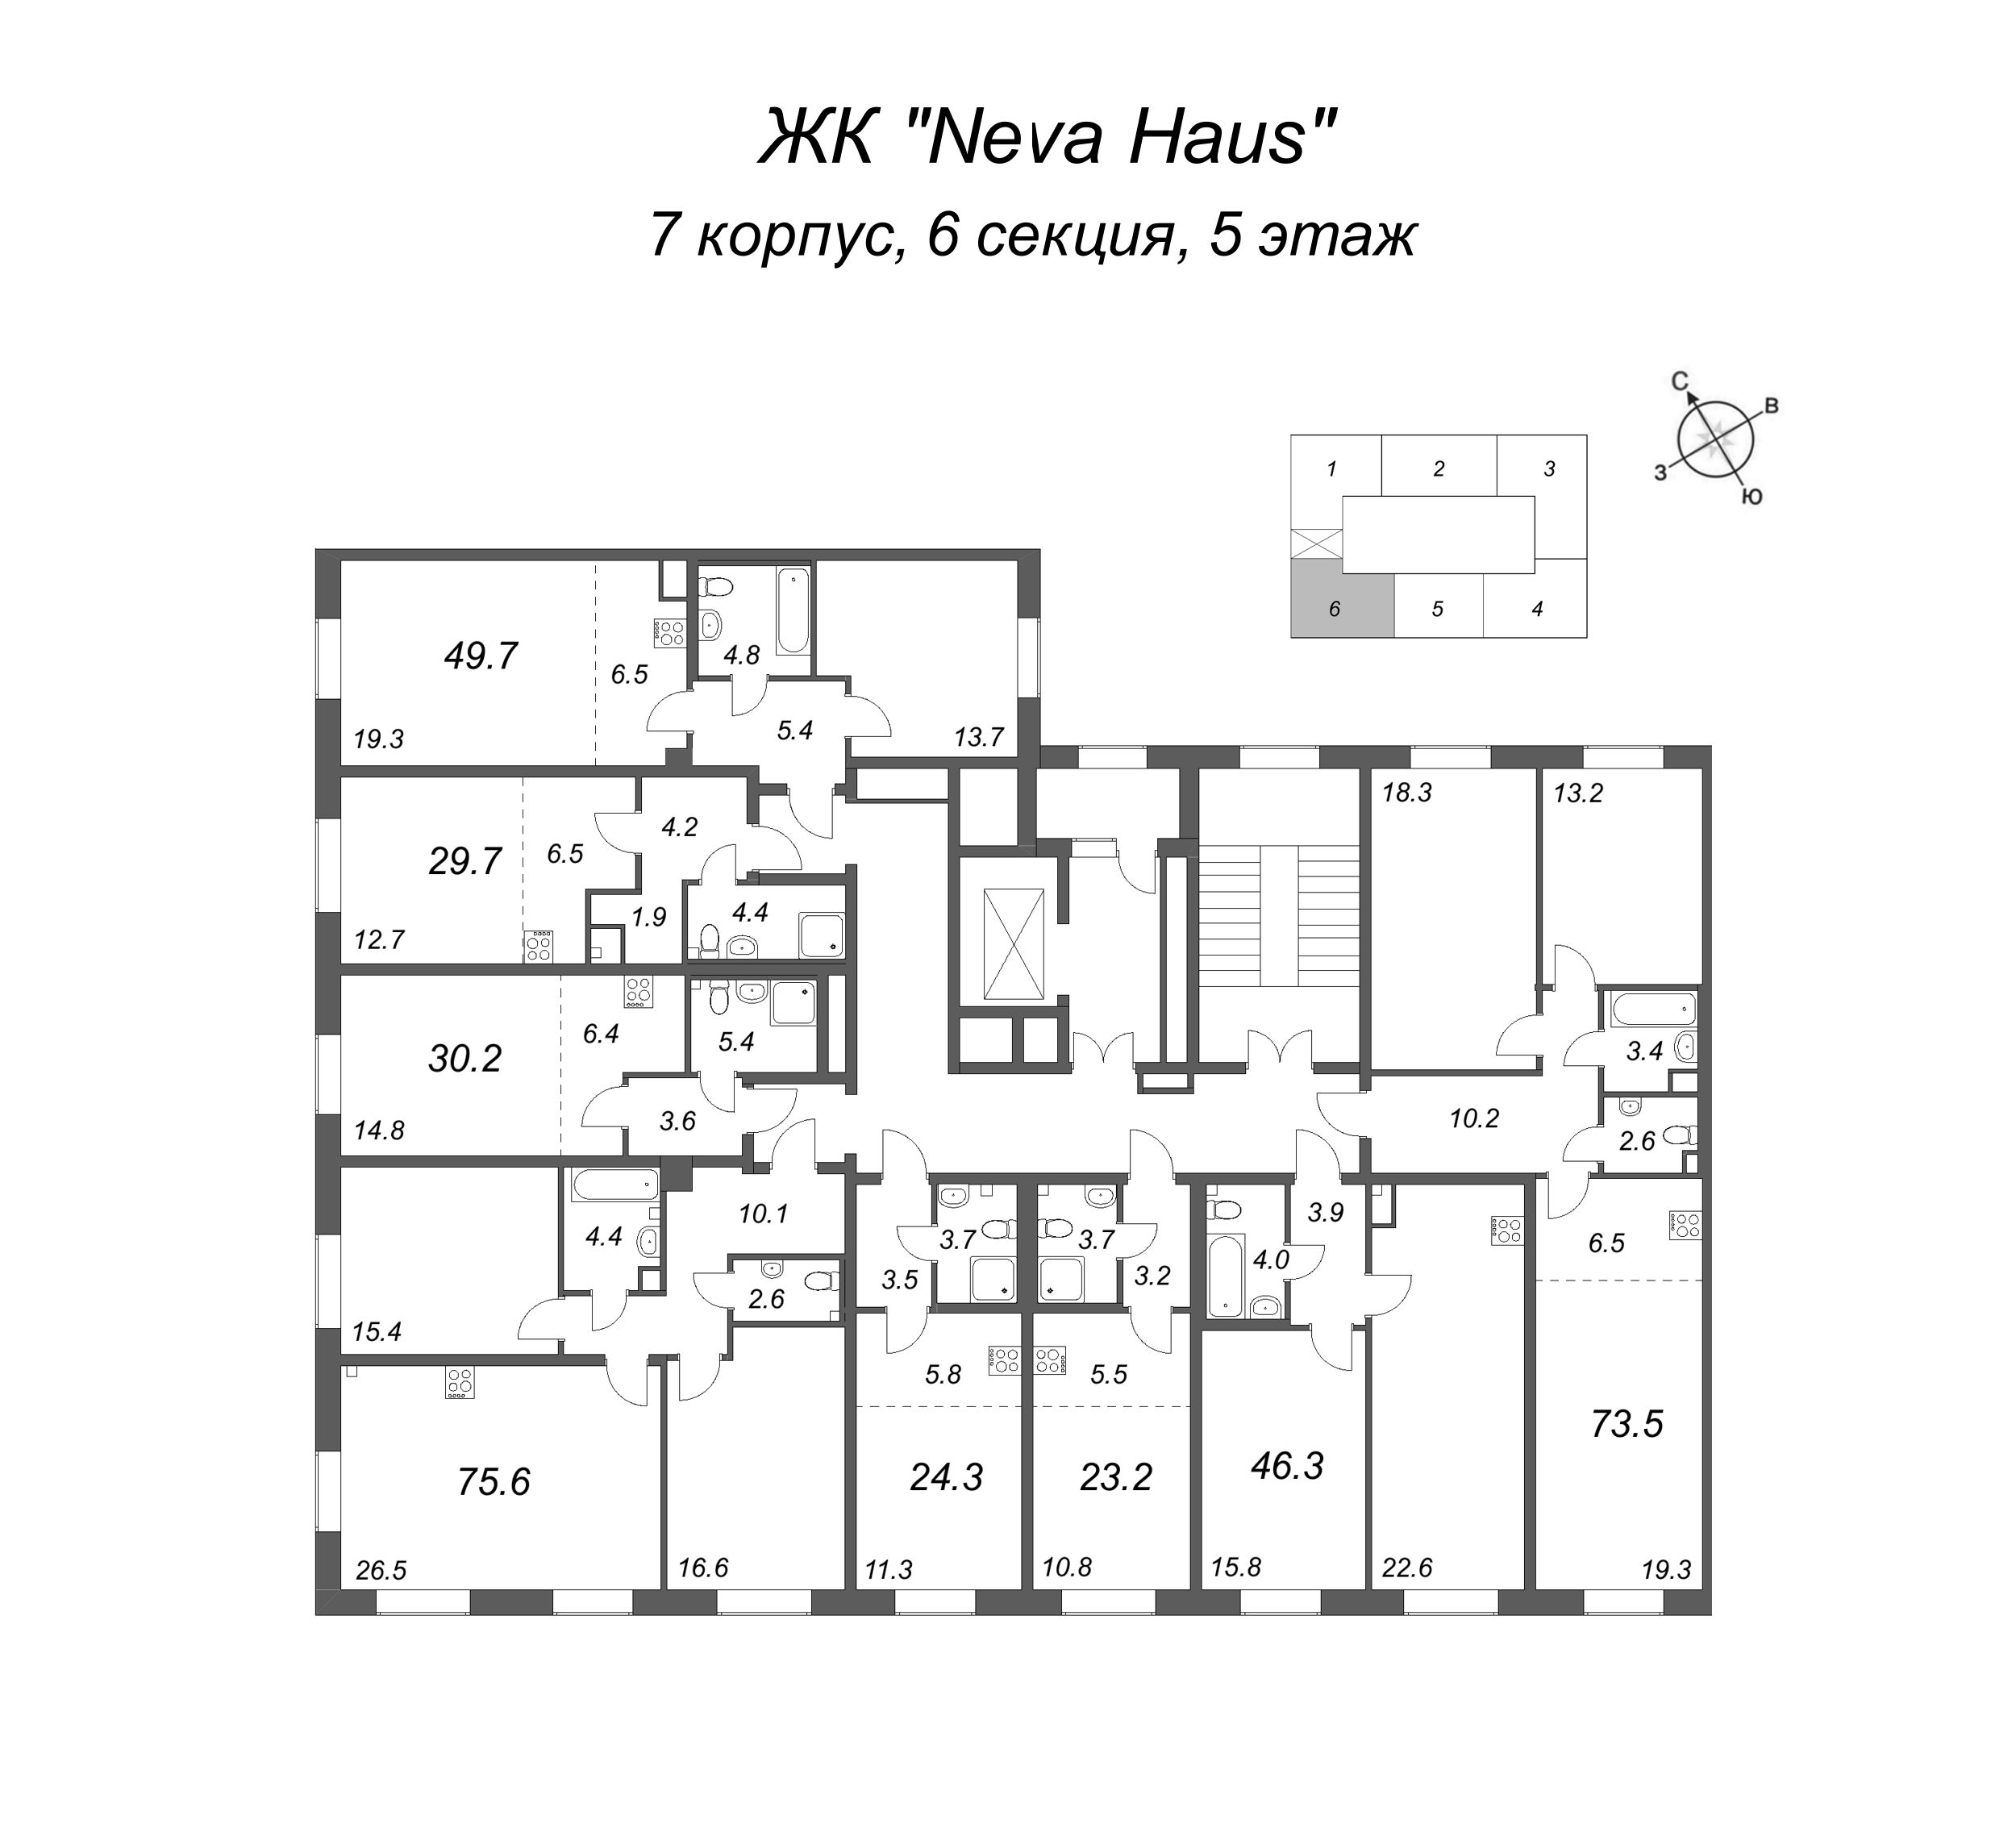 Квартира-студия, 24.2 м² в ЖК "Neva Haus" - планировка этажа